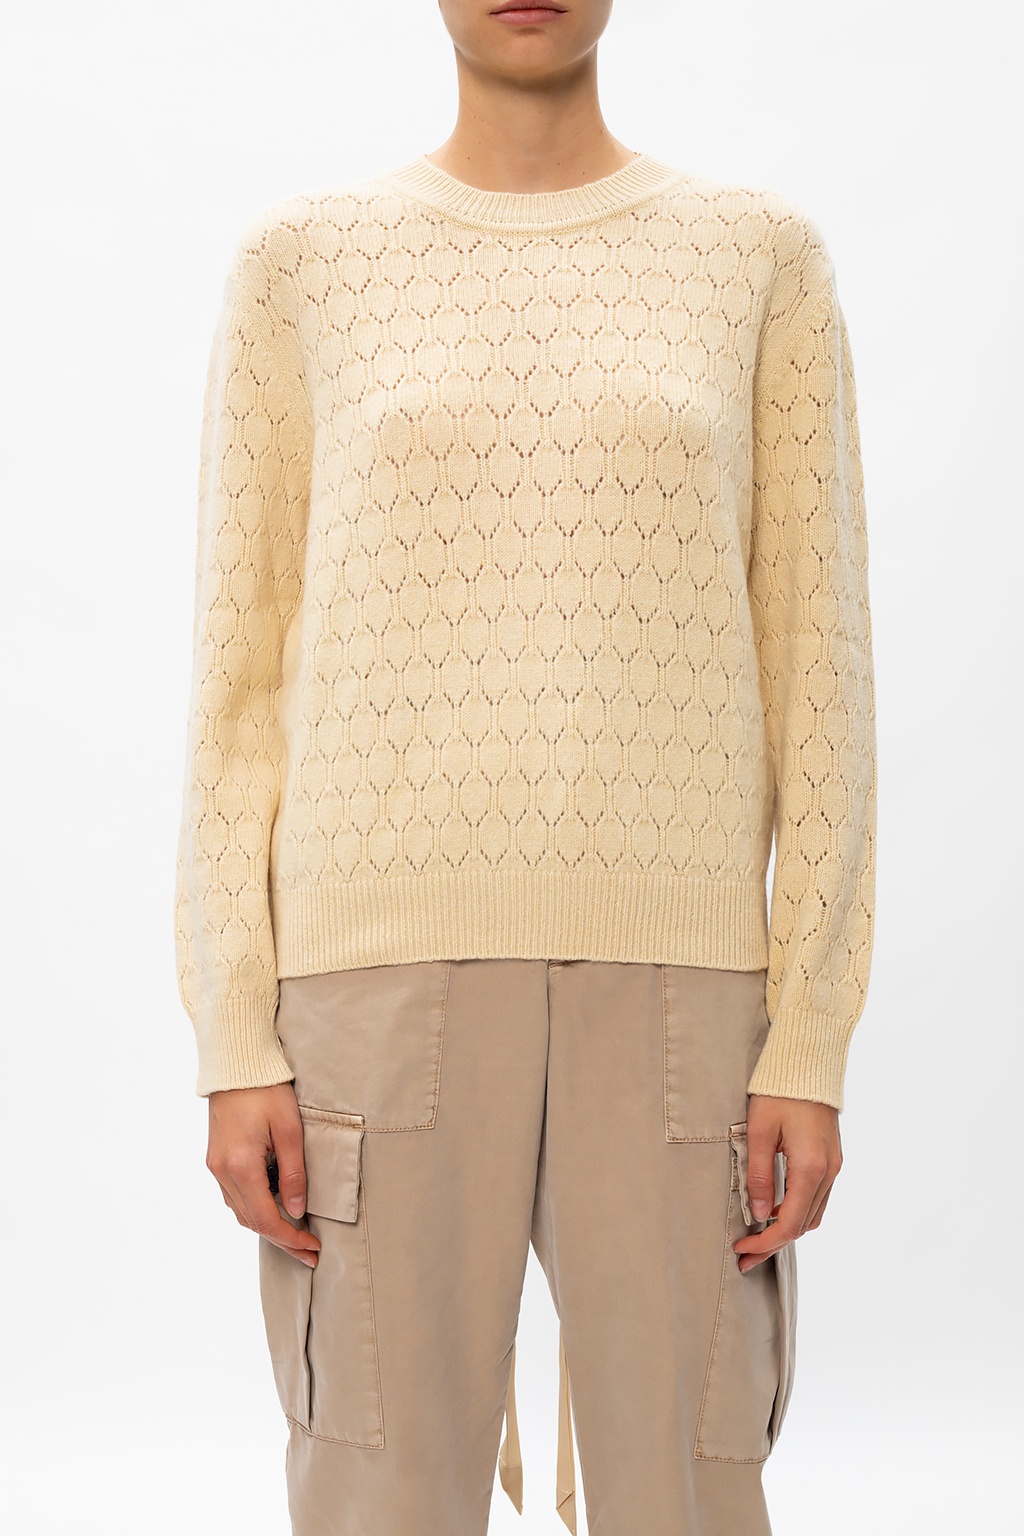 moschino knit sweater